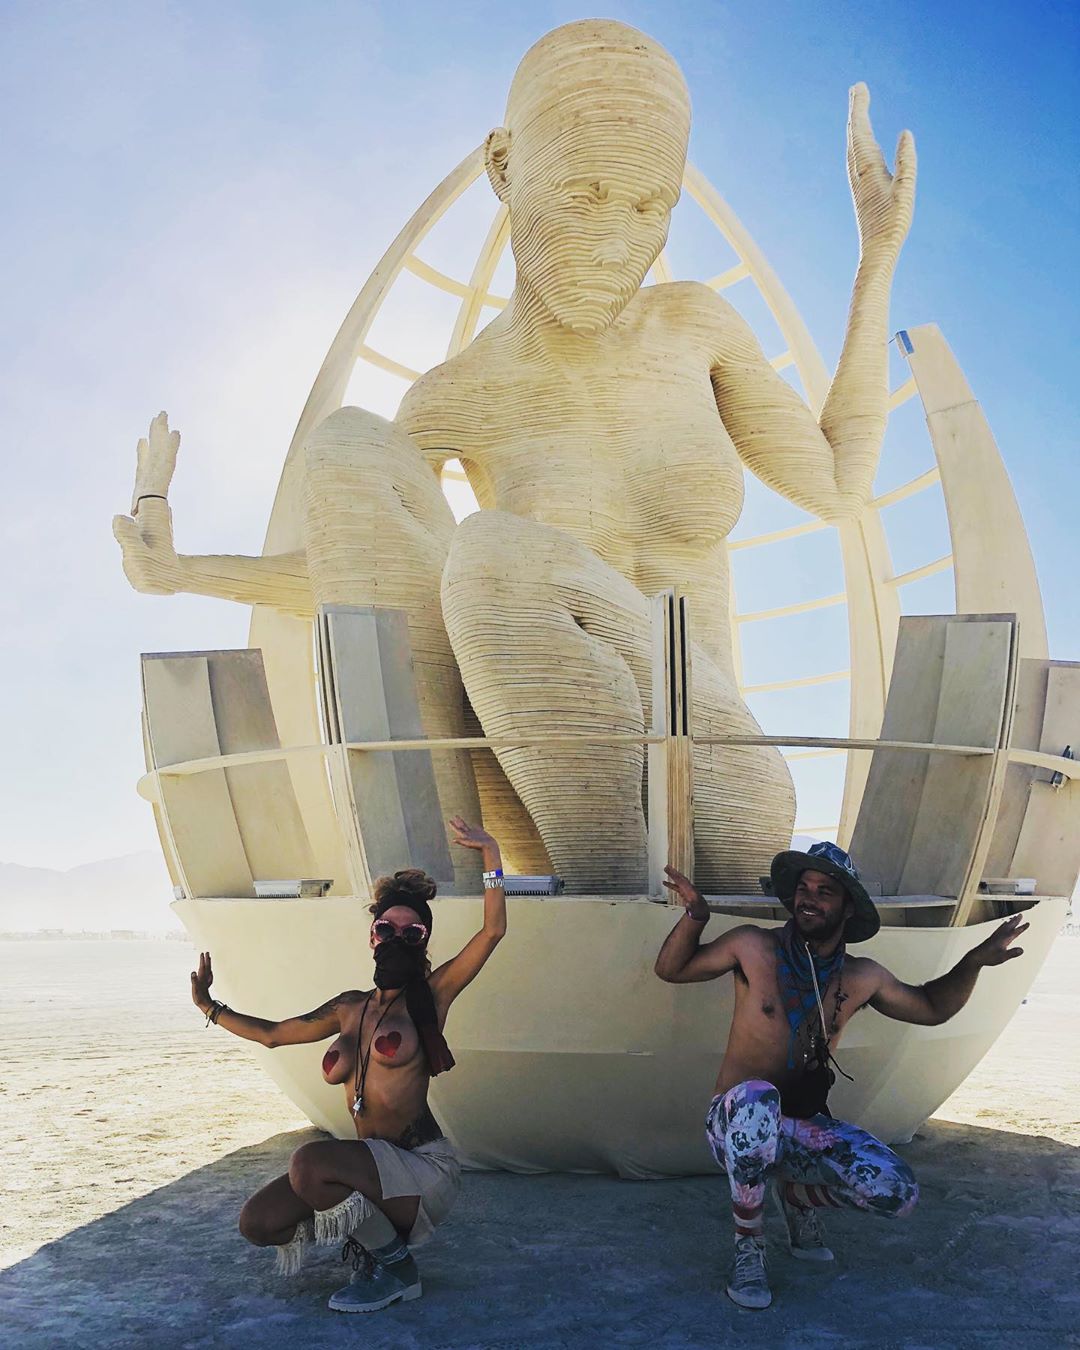 Фестиваль -Burning Man- 2019 на снимках